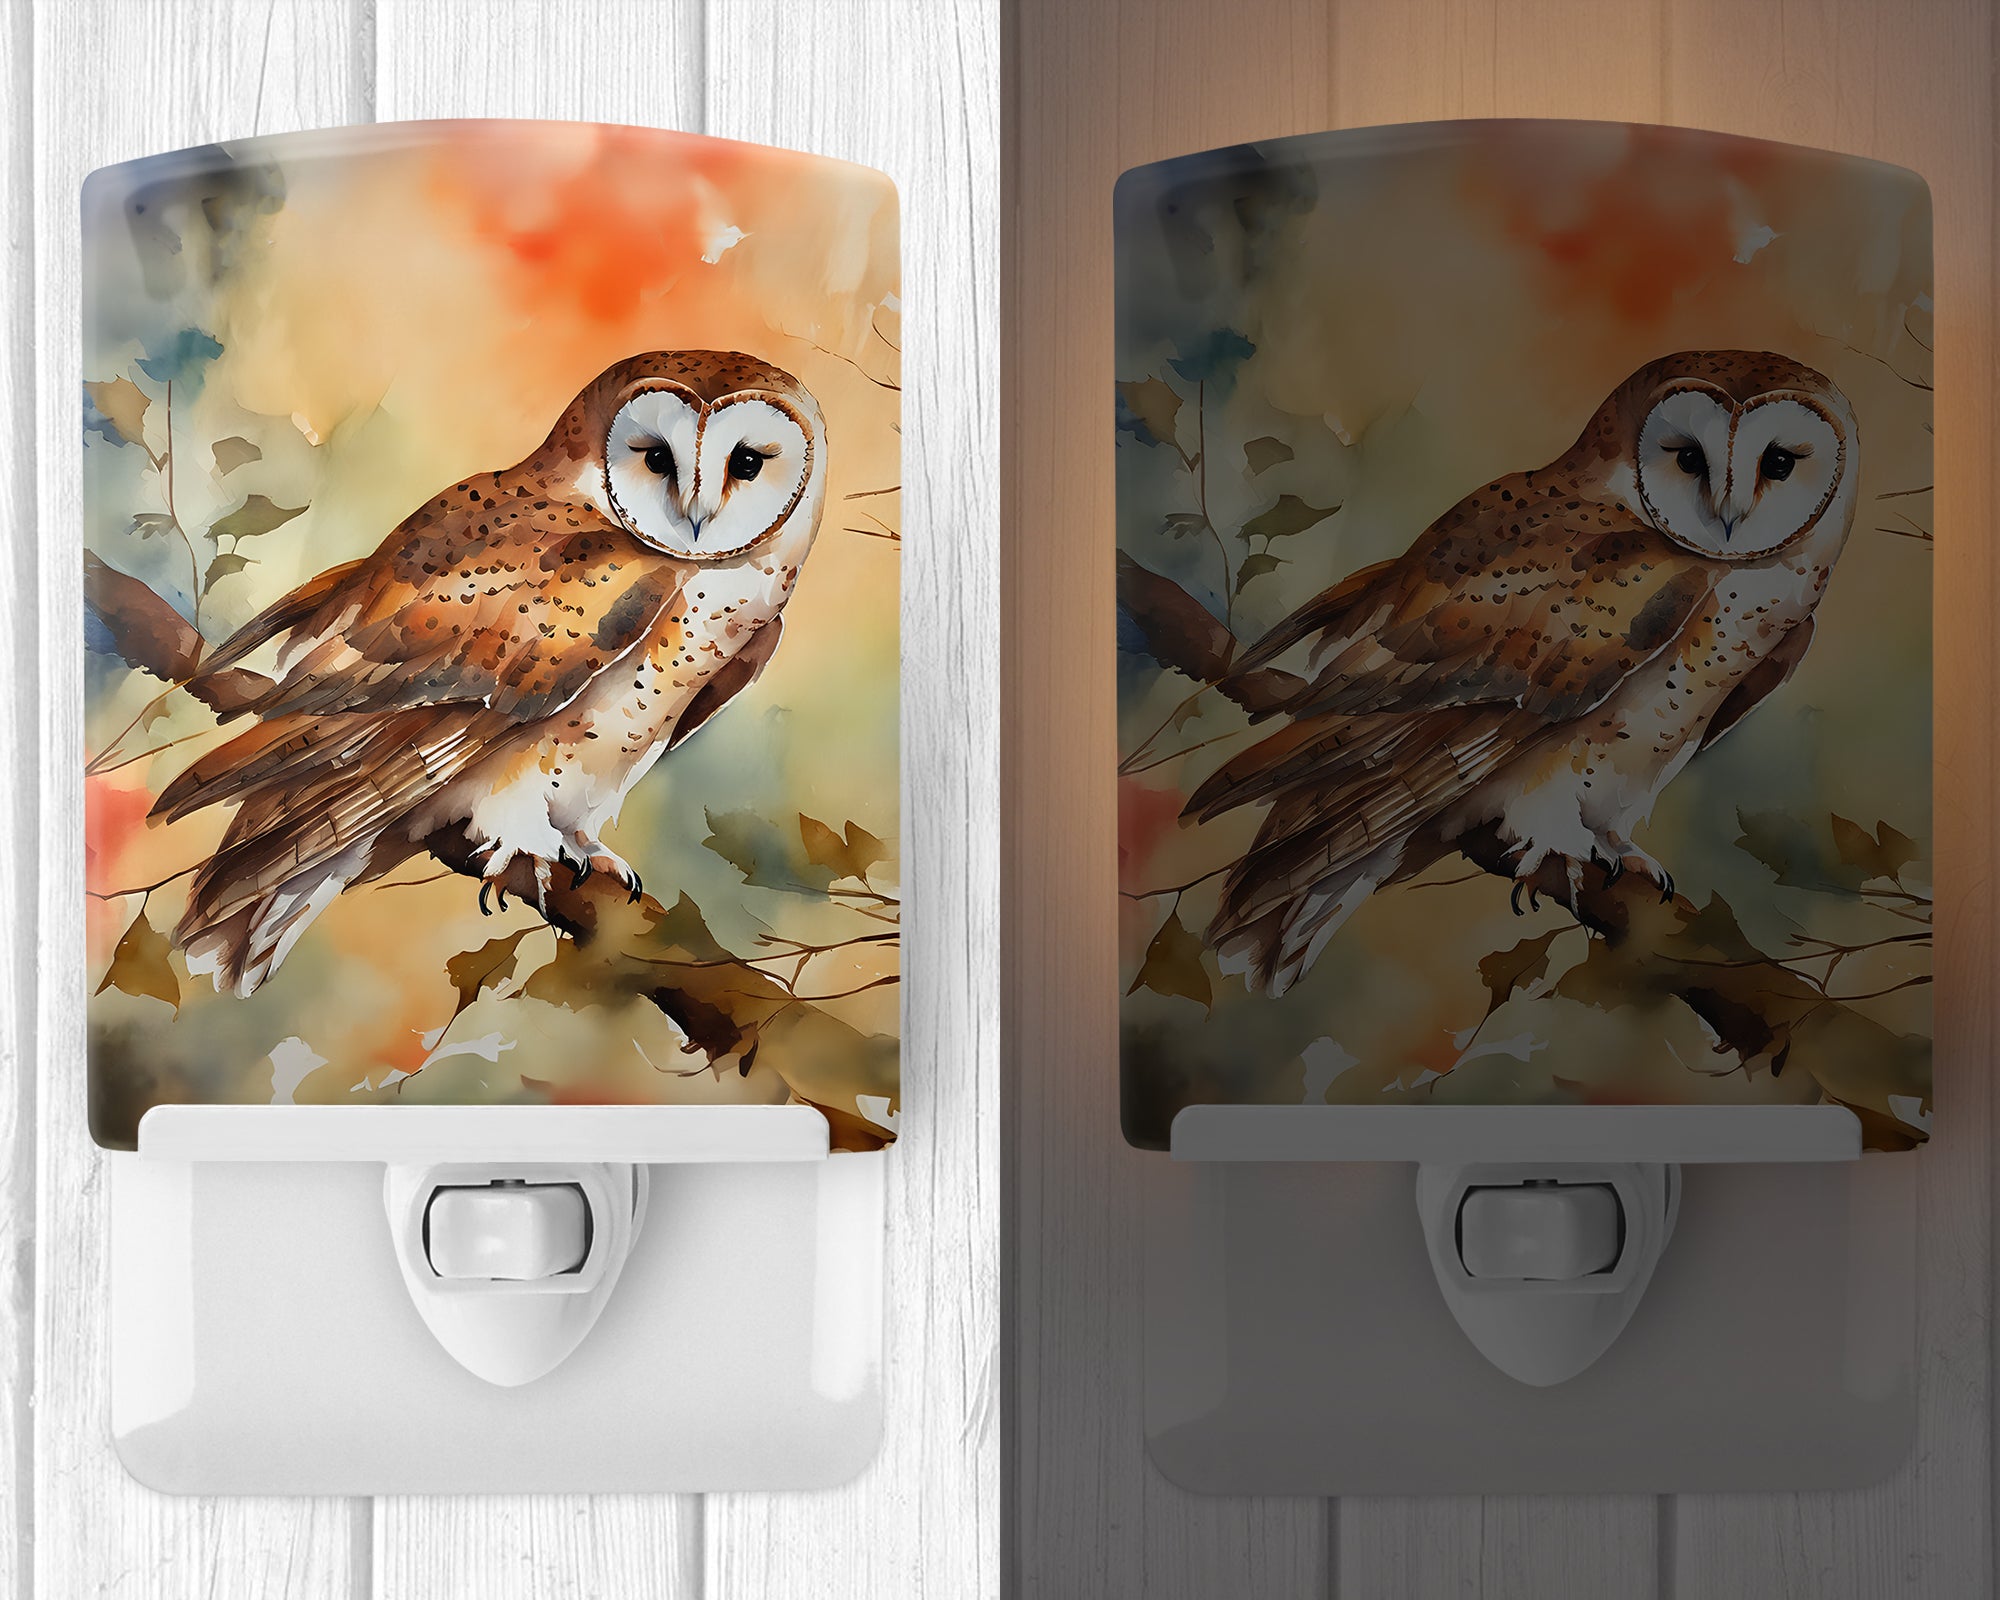 Buy this Barn Owl Ceramic Night Light